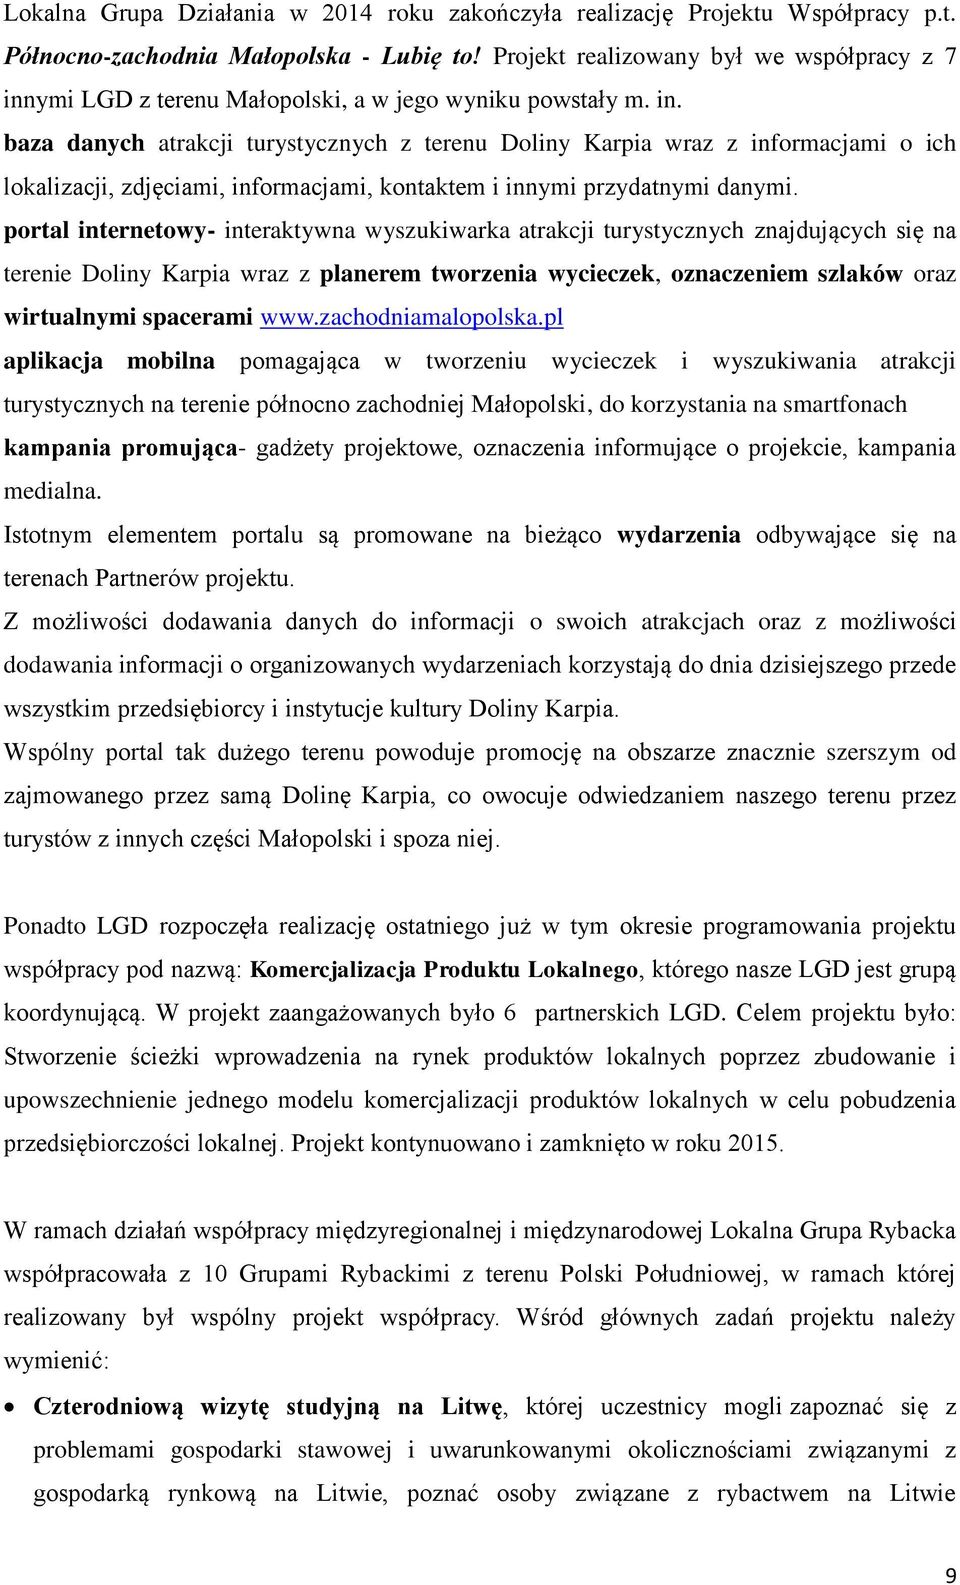 ymi LGD z terenu Małopolski, a w jego wyniku powstały m. in.